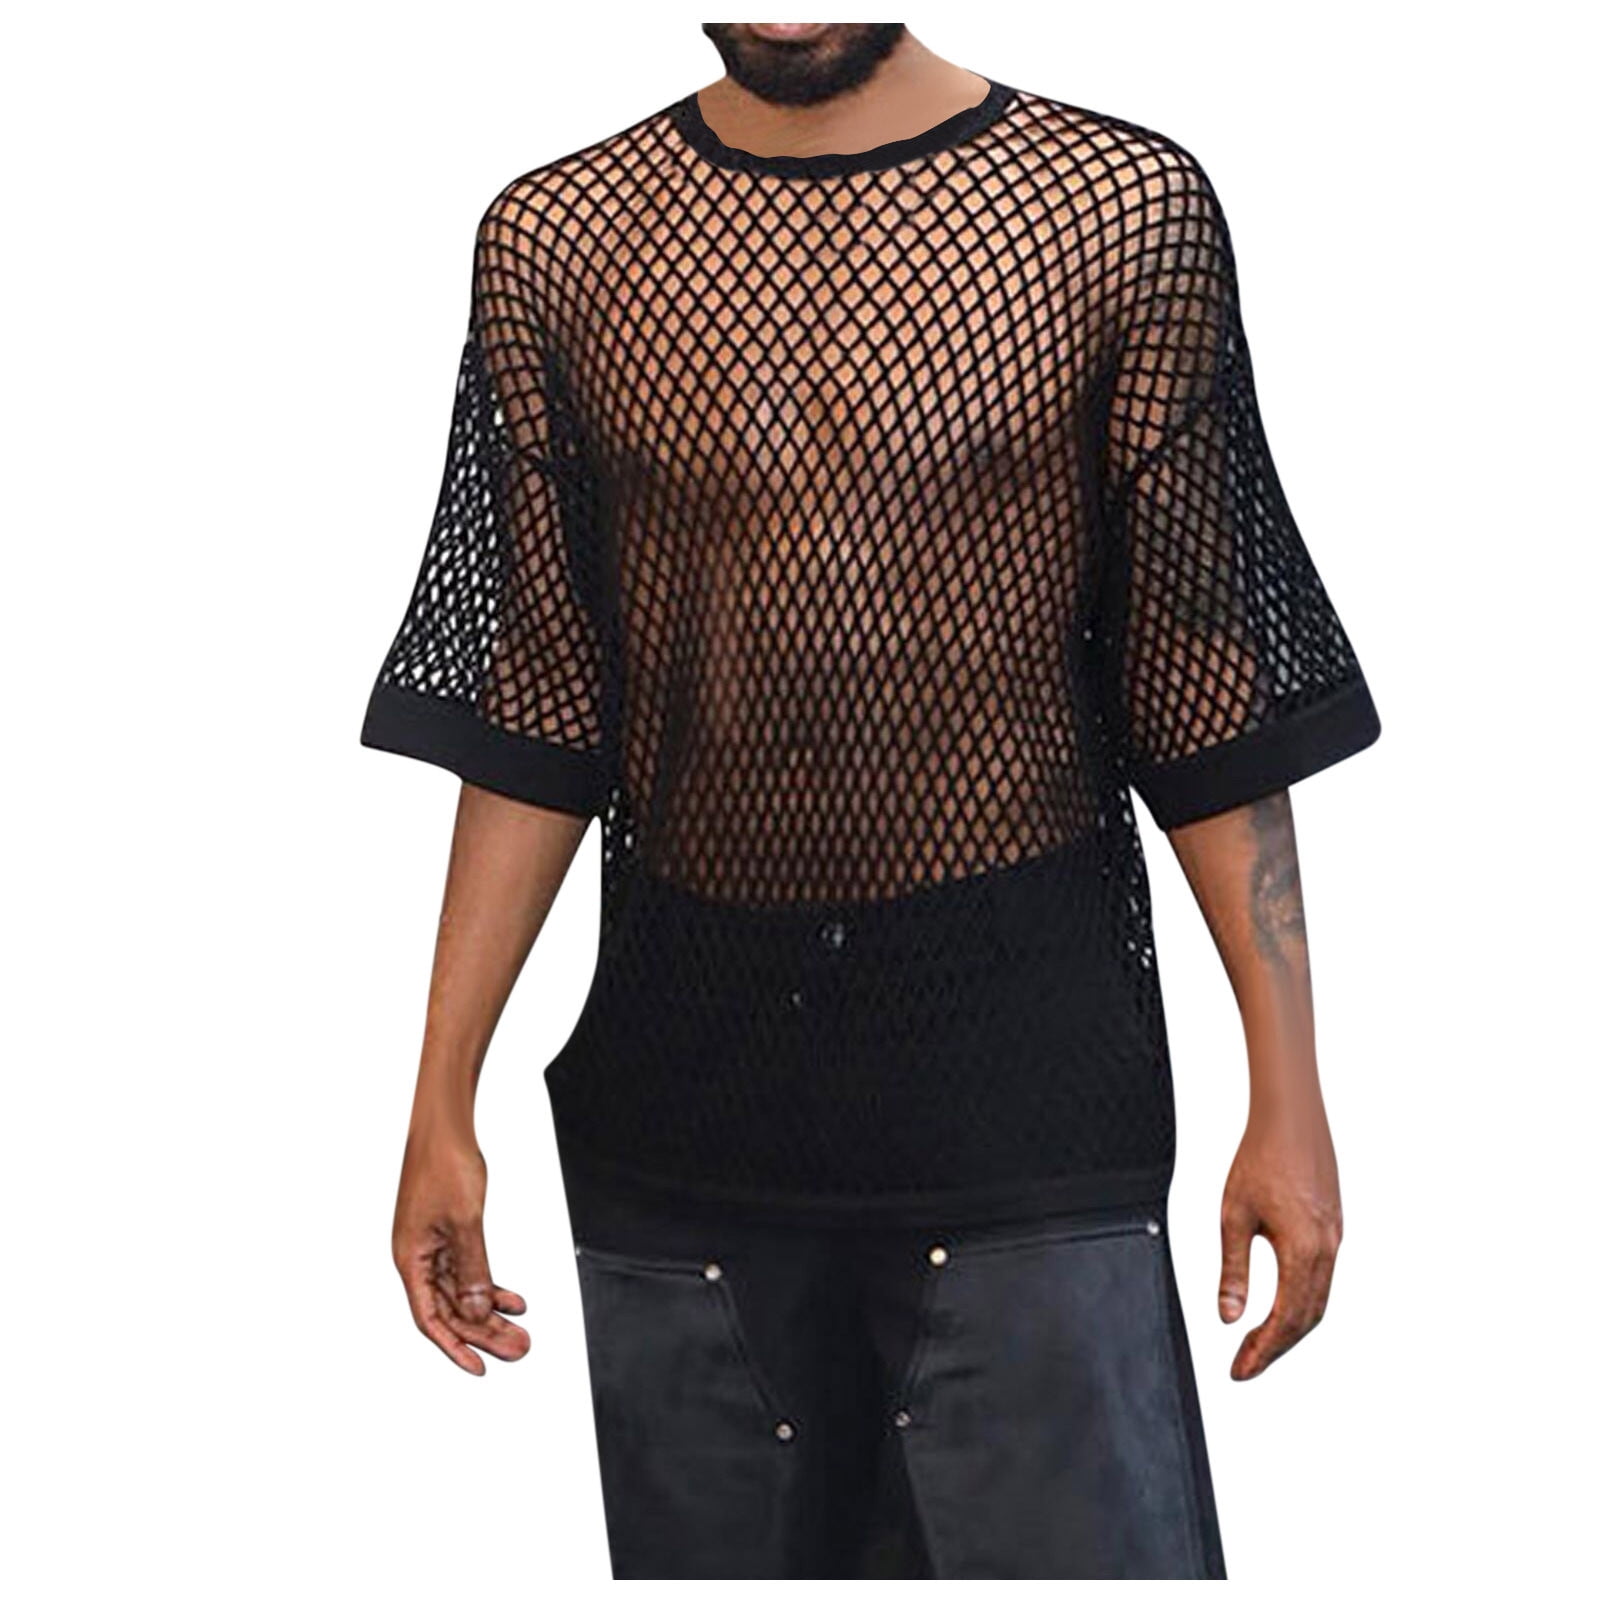 ZXHACSJ Men Fishnet Shirt Mens Fishnet Top Mesh Transparent Muscle T-Shirt  Net Undershirt Top Black XL